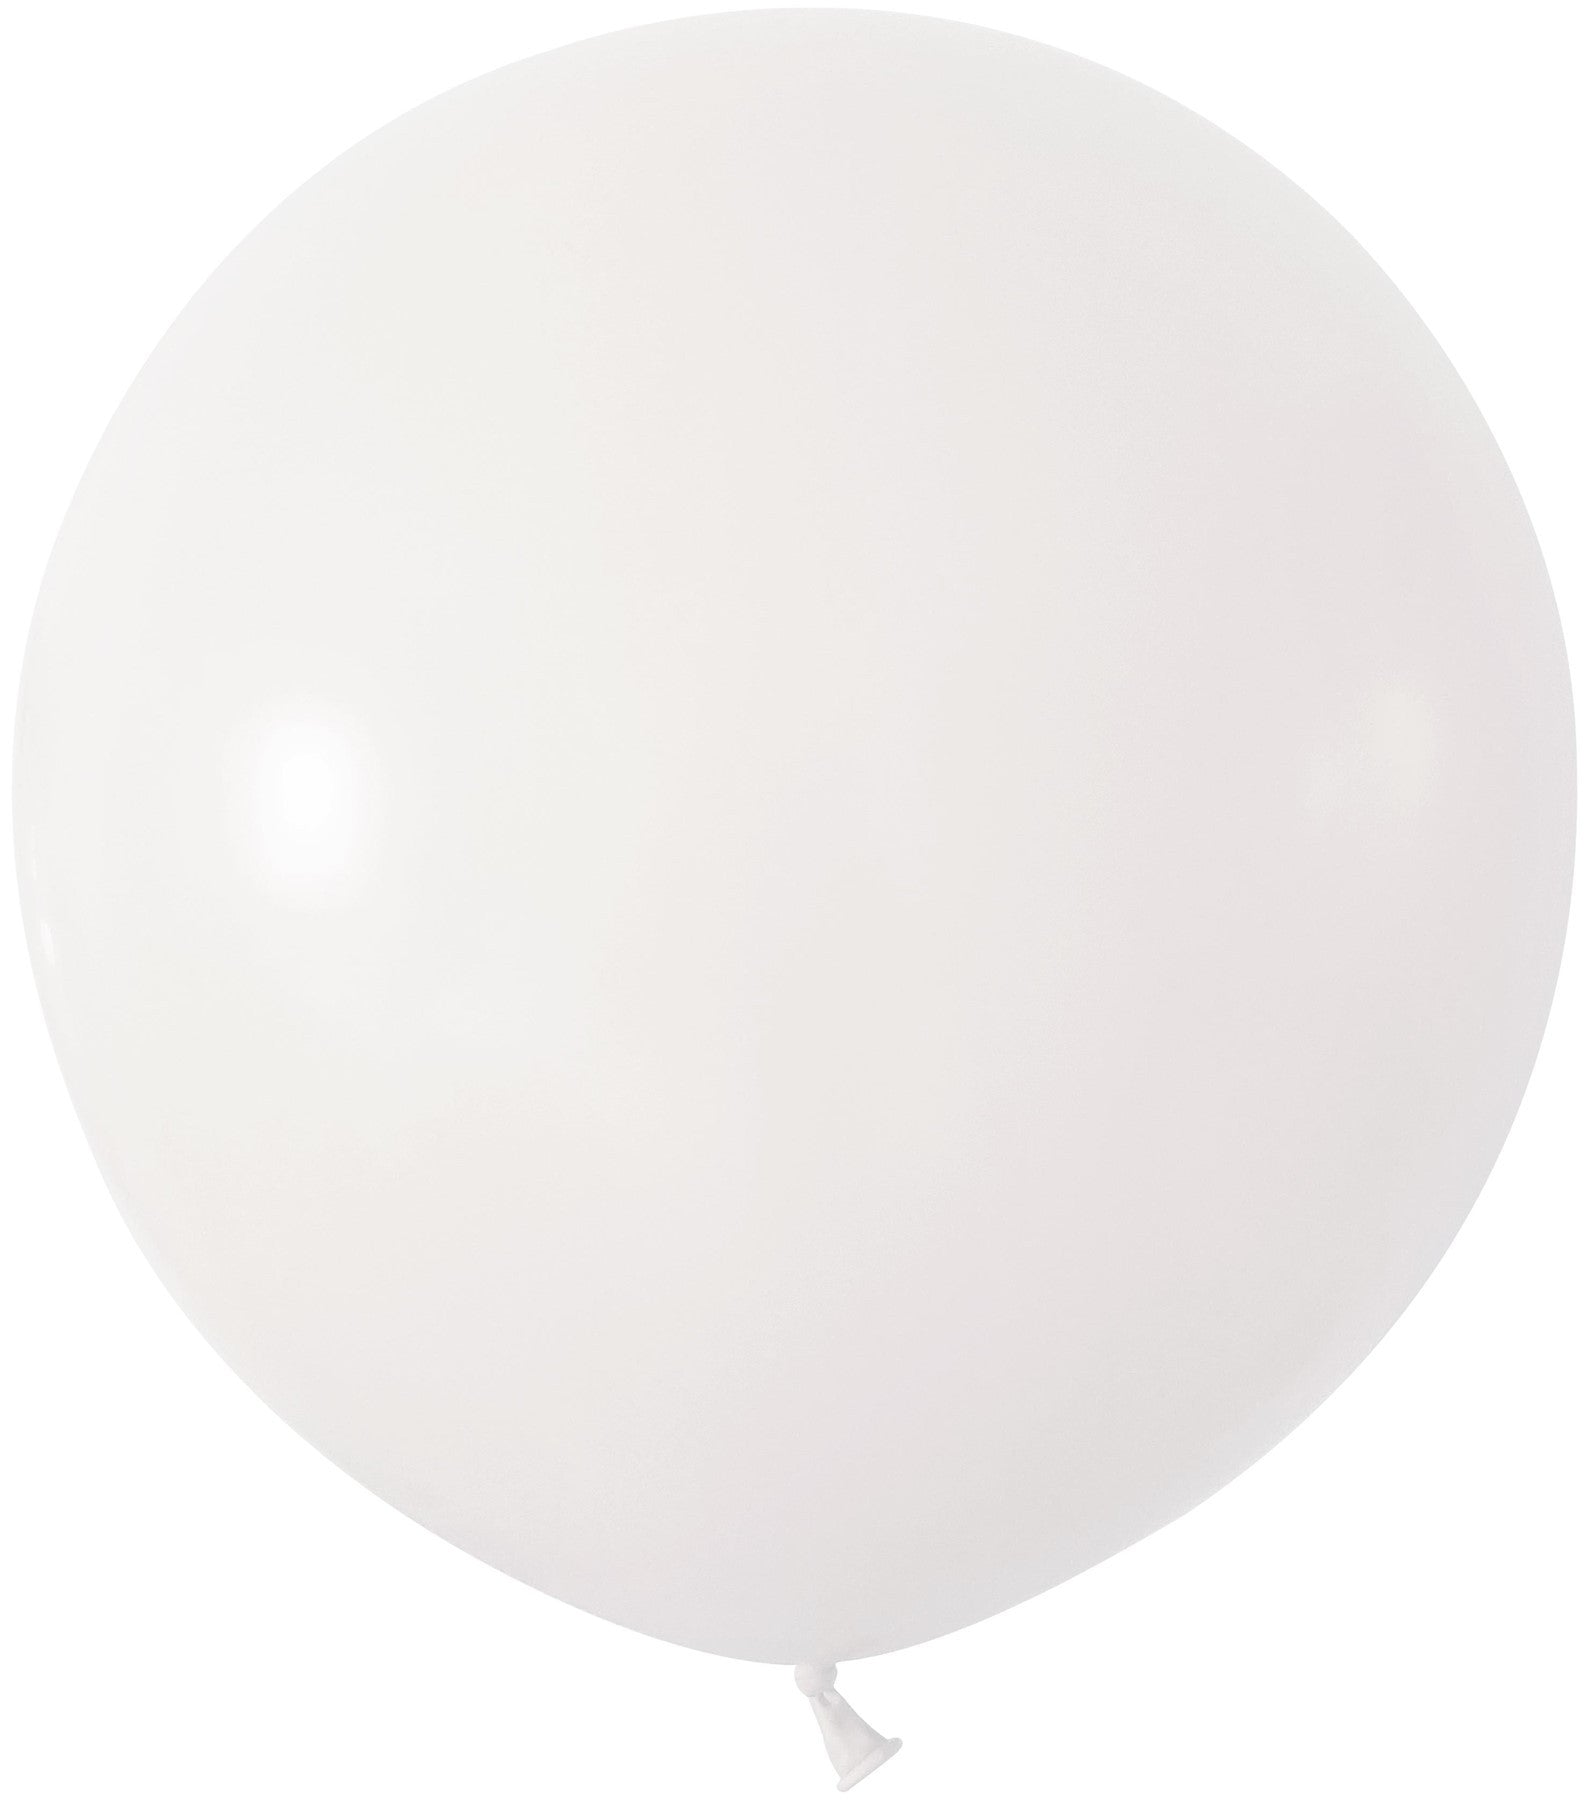 View White Jumbo Latex Balloon 24 inch Pk 3 information